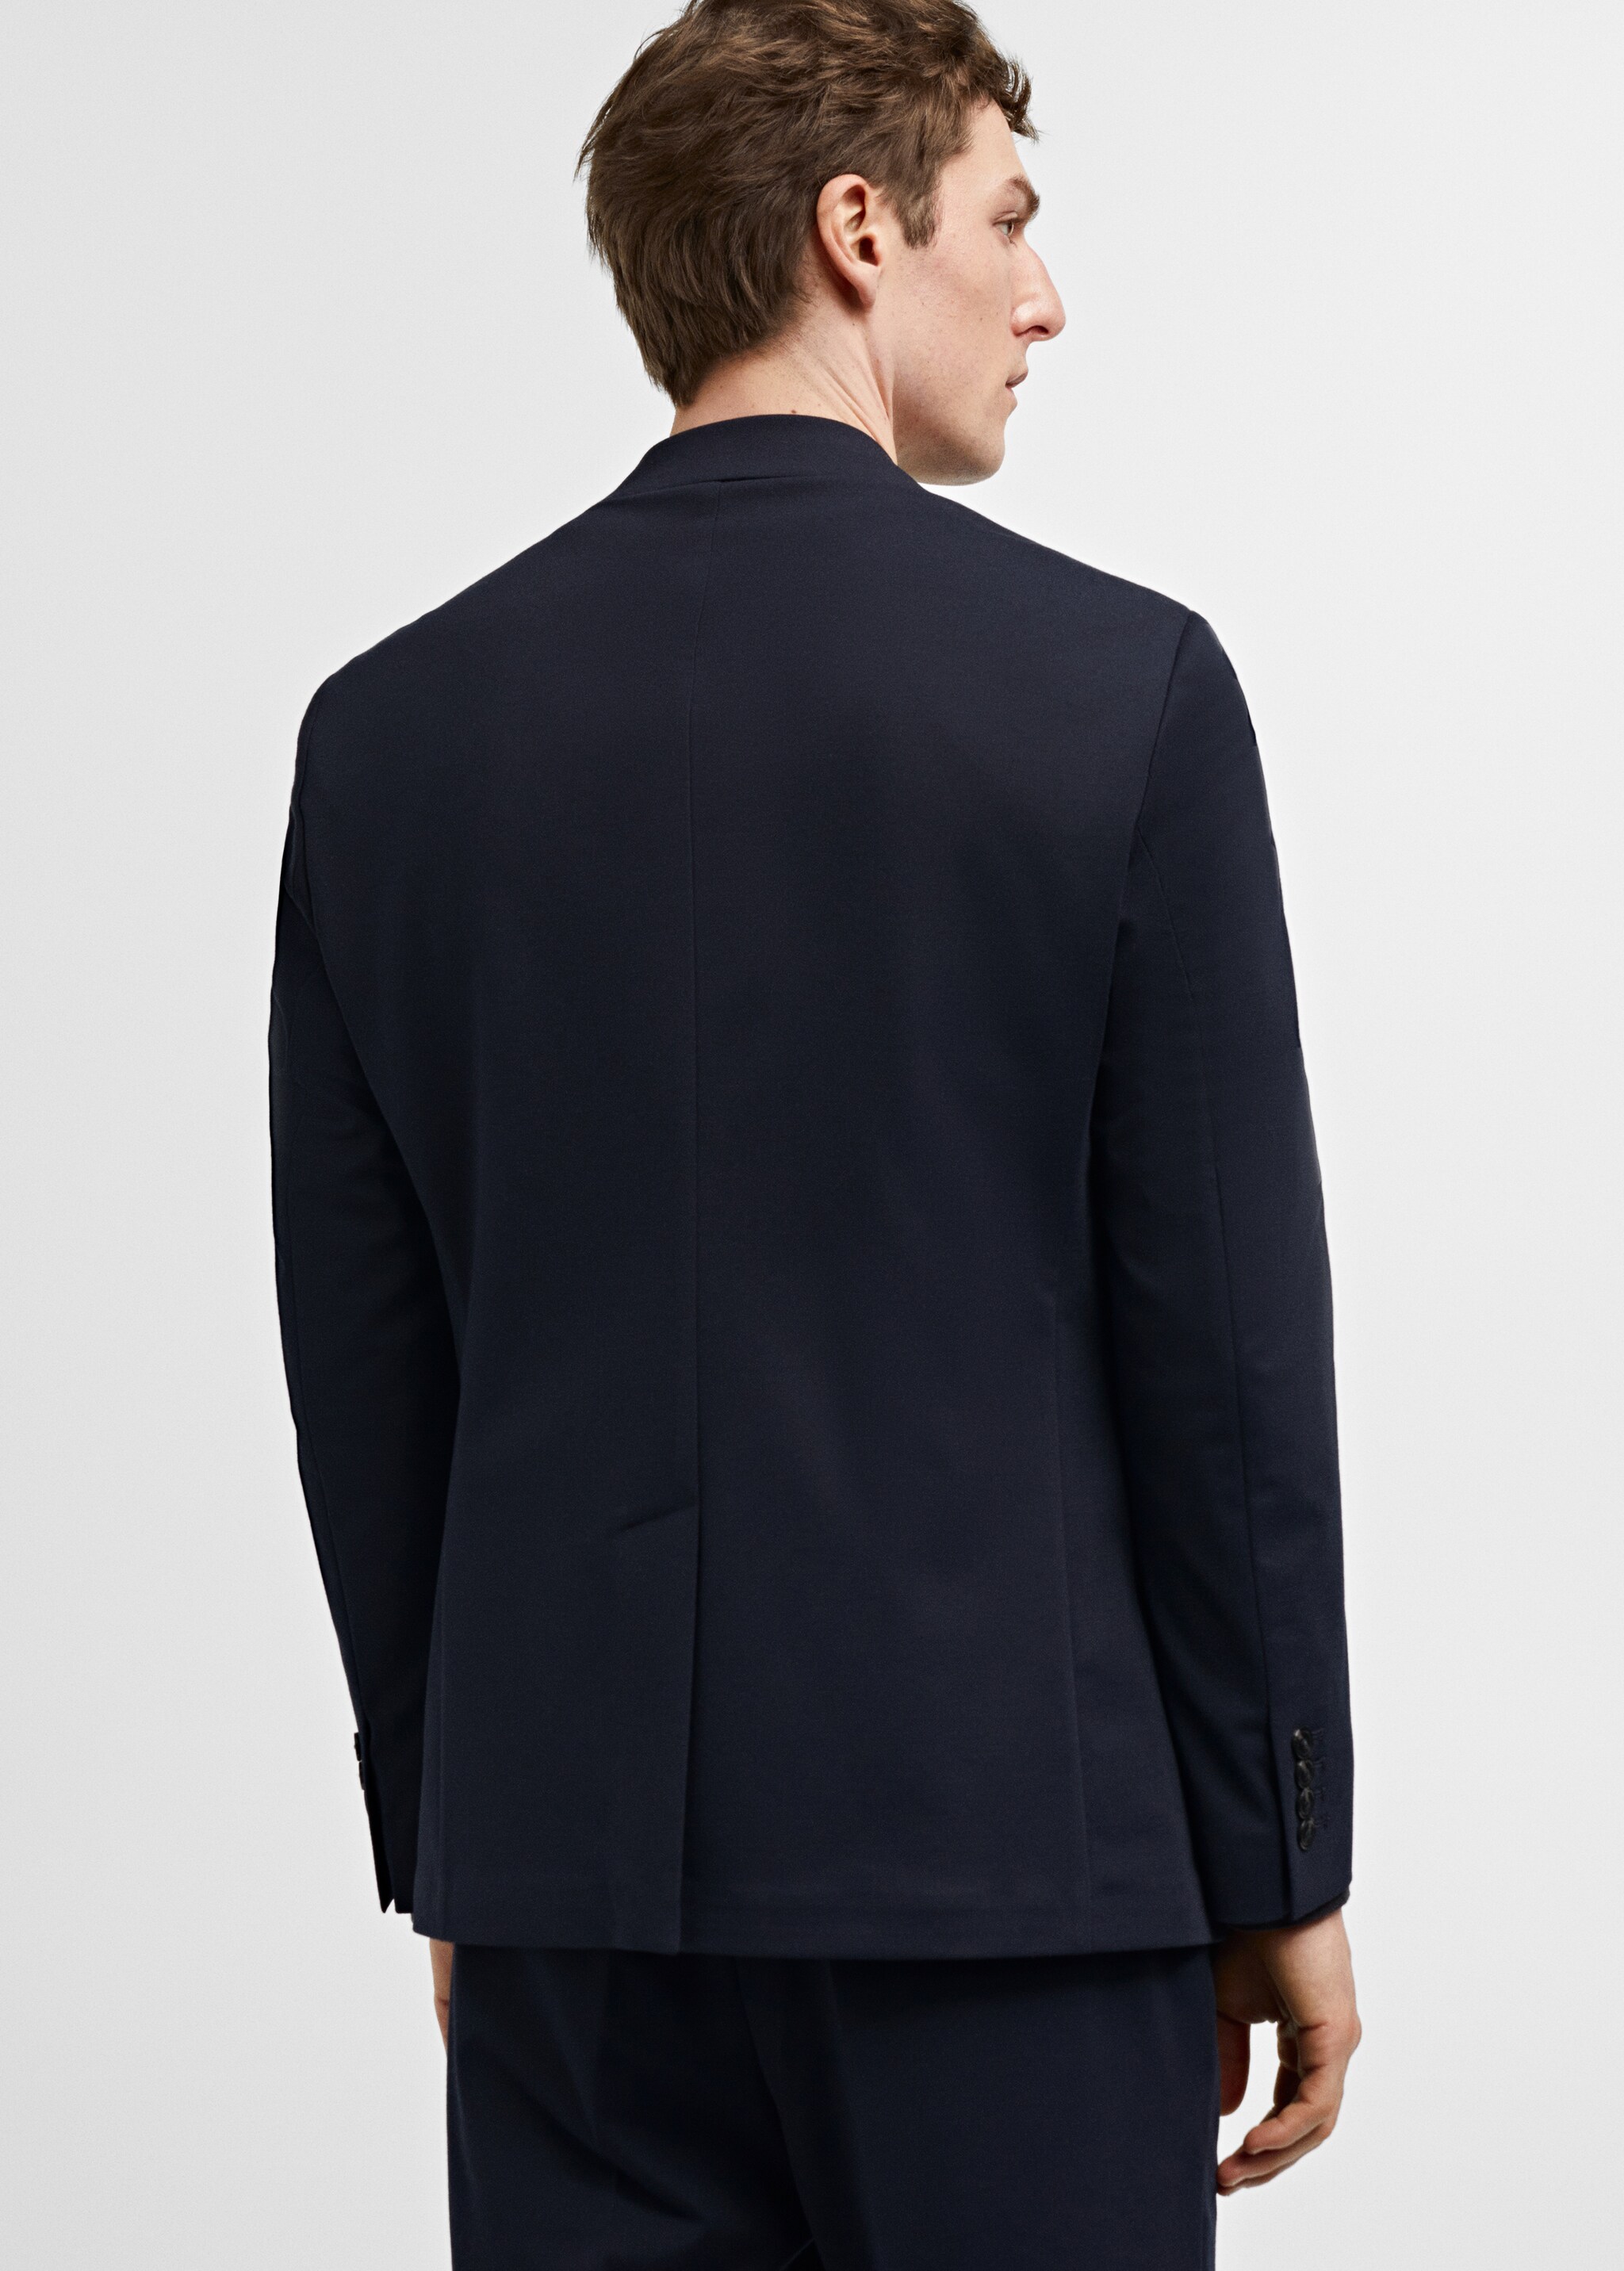 Костюмный пиджак slim fit - Обратная сторона изделия